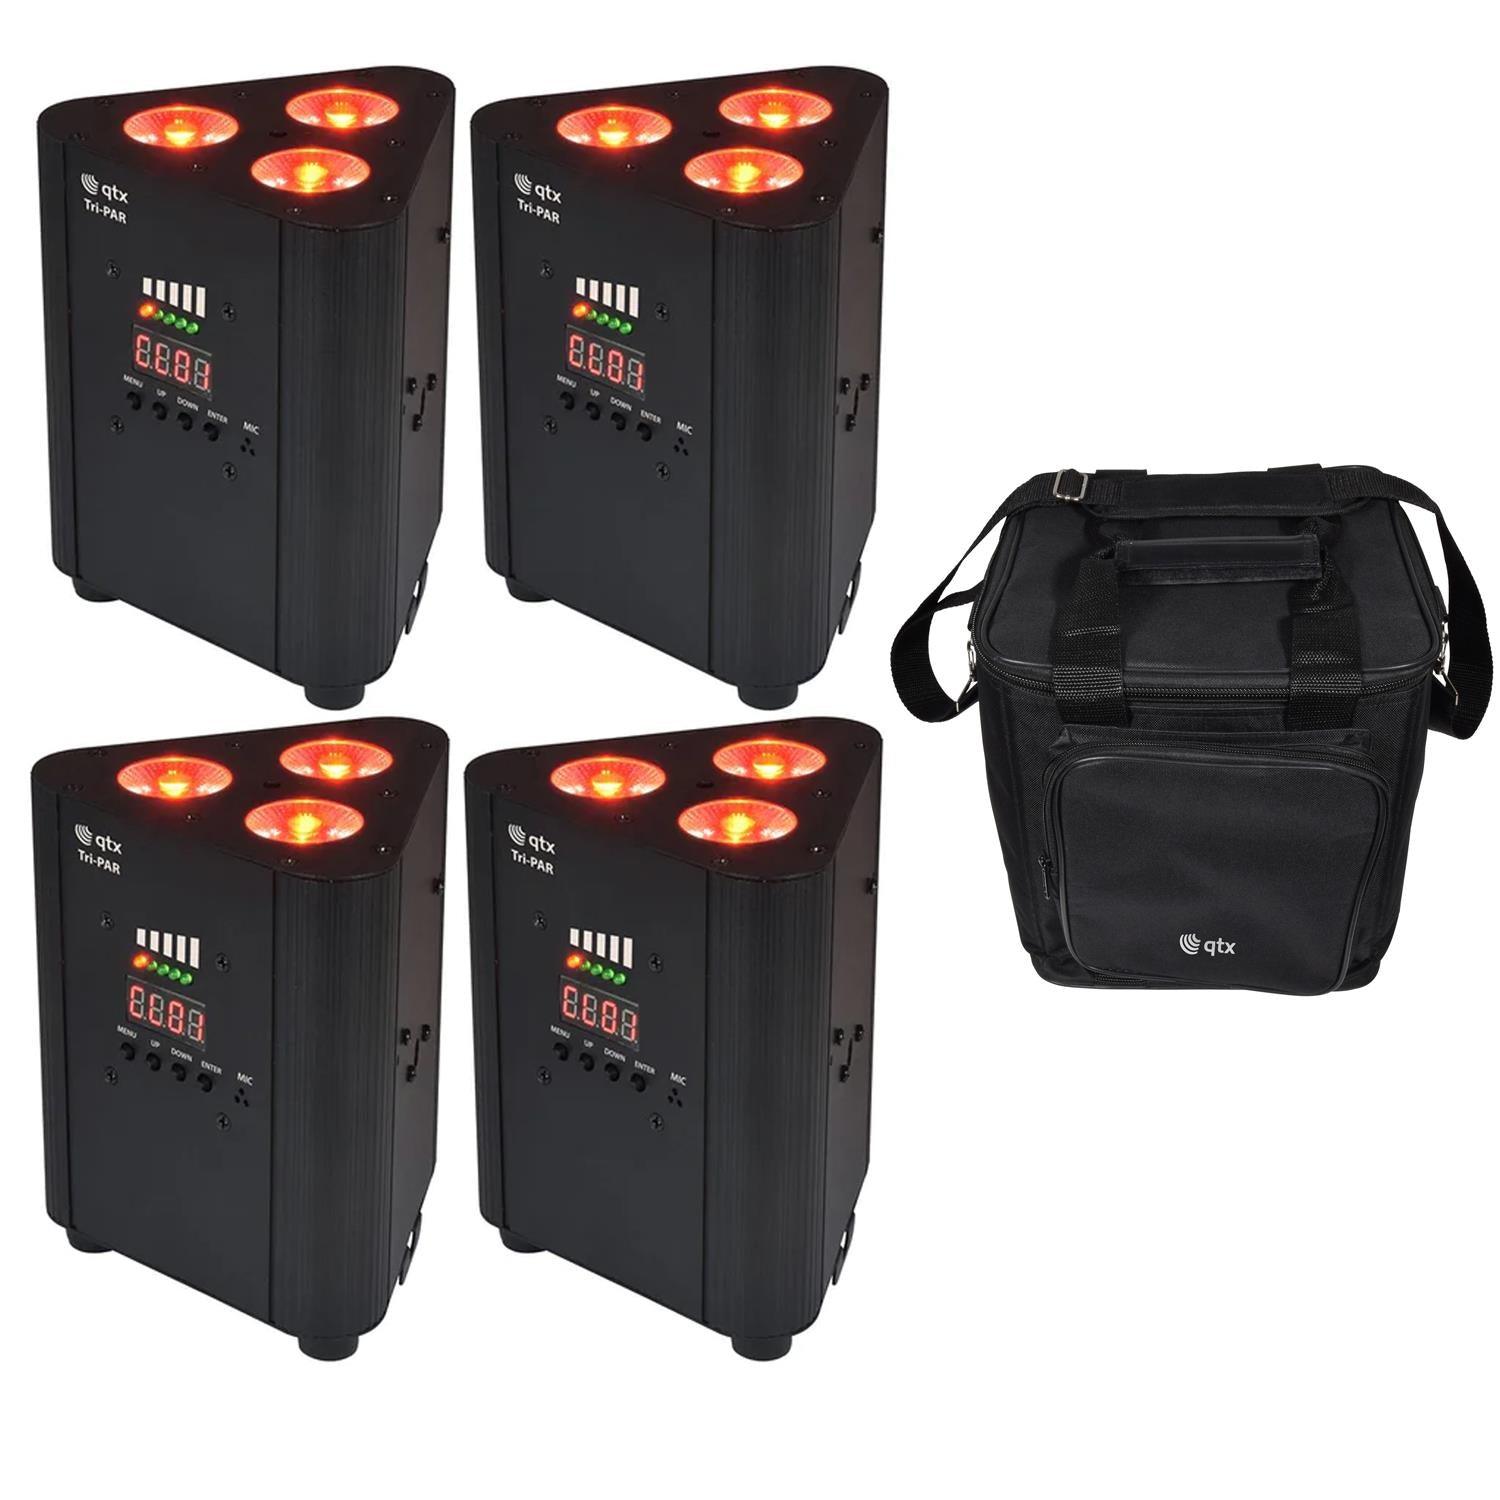 4 x QTX Tri-Par RGBW Rechargeable Battery Triple Par Can Uplighter with Carry Bag - DY Pro Audio